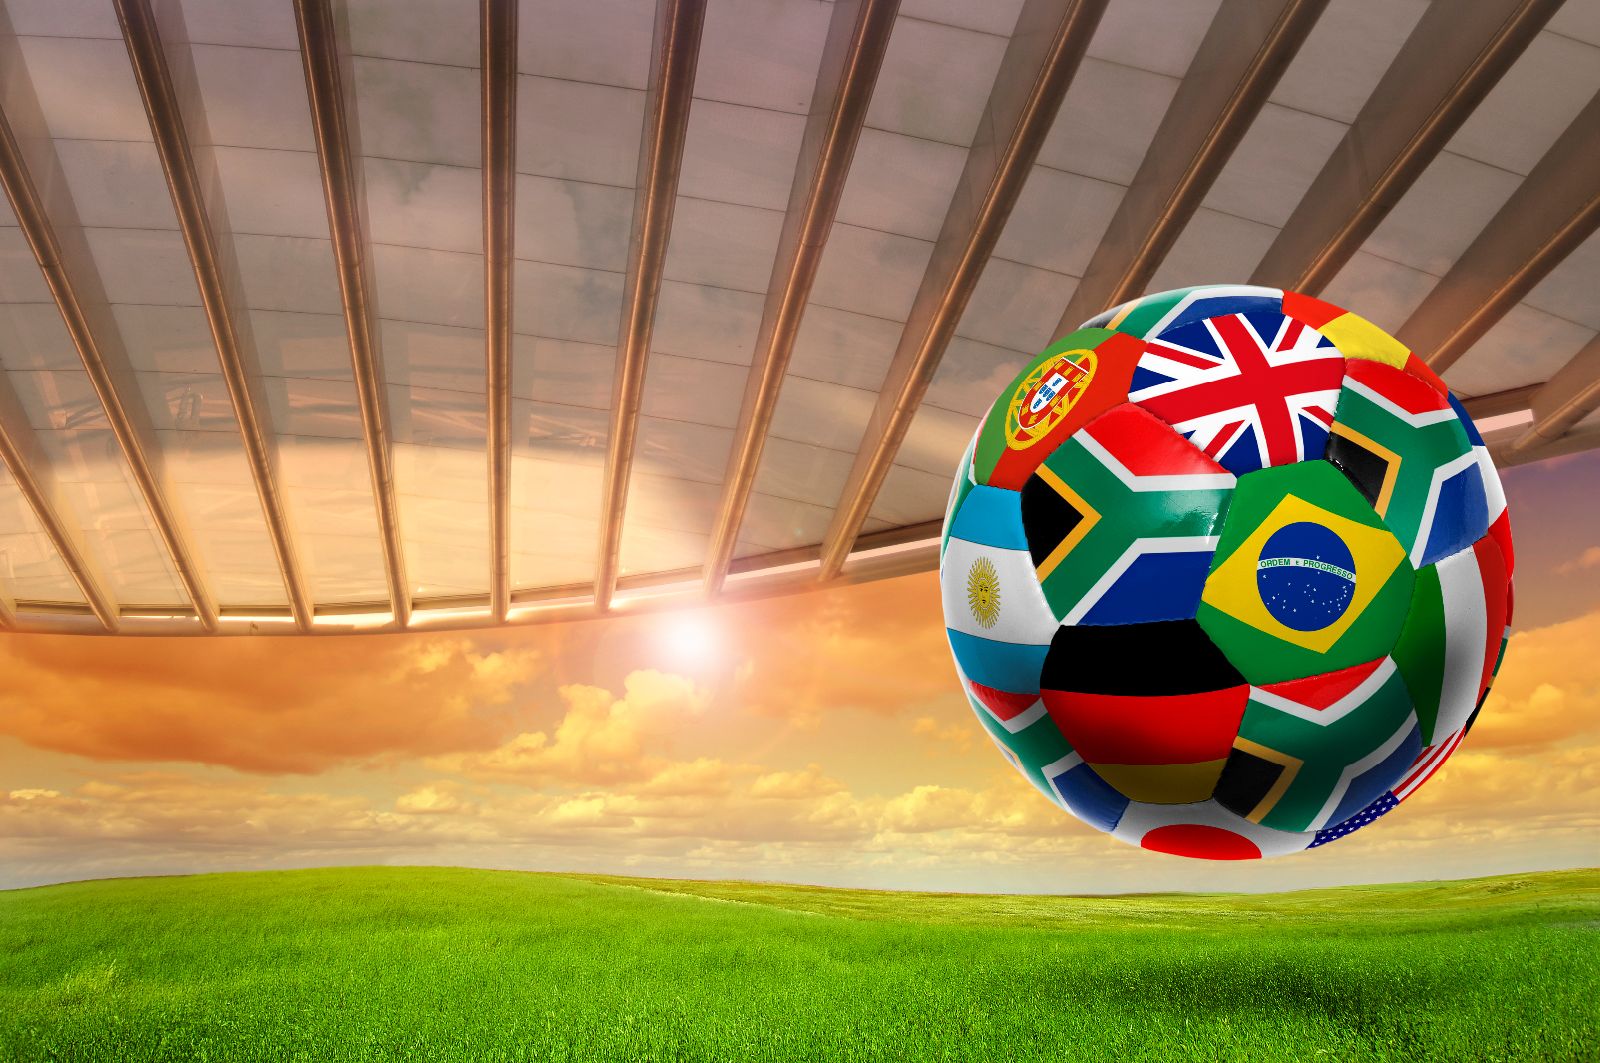 Balón de soccer con banderas del mundo, atardecer de fondo con un techo de cristal en un estadio